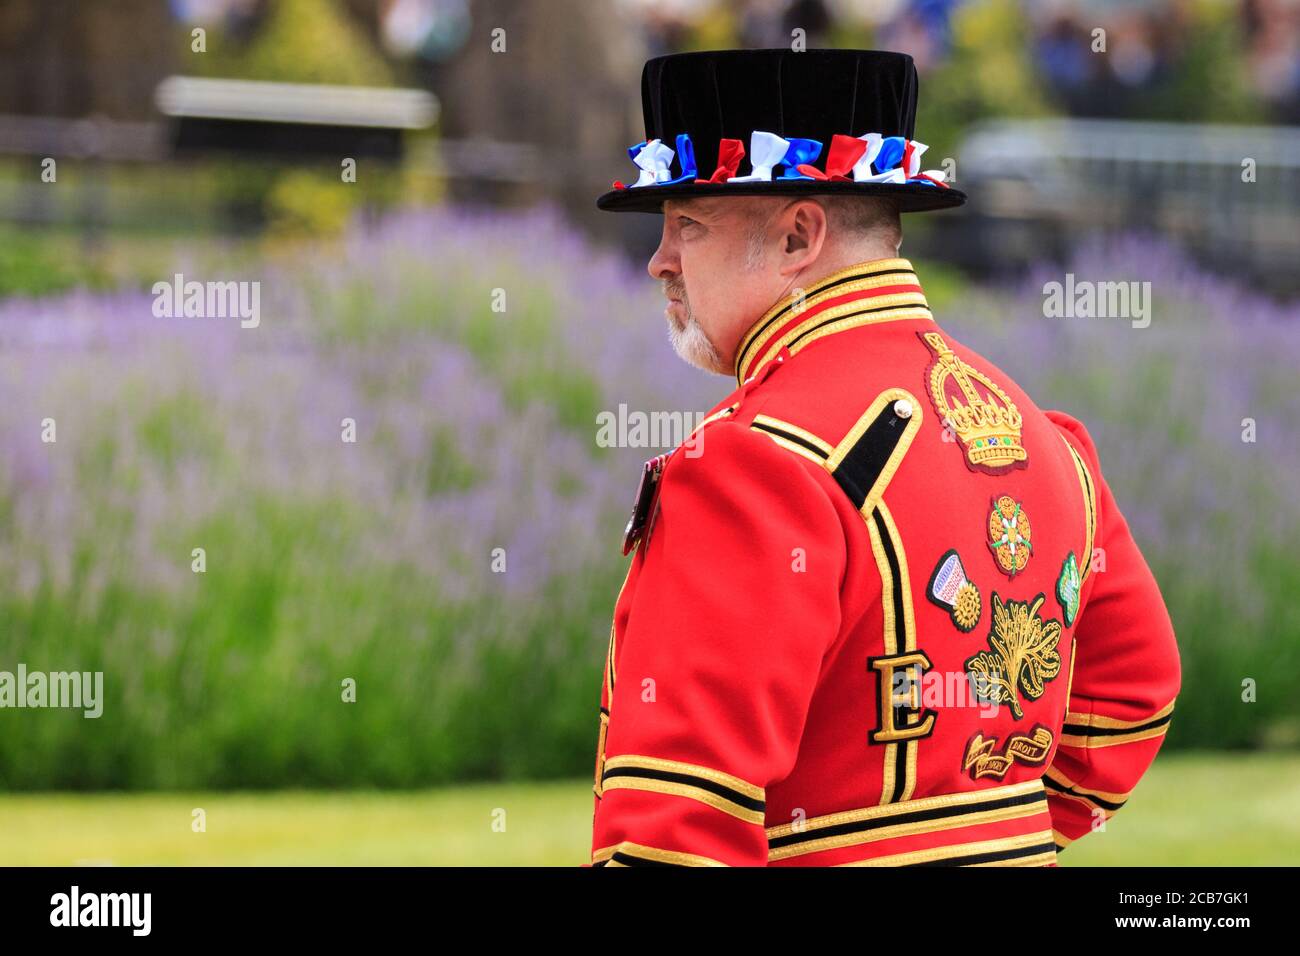 Un guerriere di yeoman, comunemente noto come Beefeater, alla Torre di Londra, in uniforme cerimoniale durante il saluto delle armi, Londra, Inghilterra Foto Stock